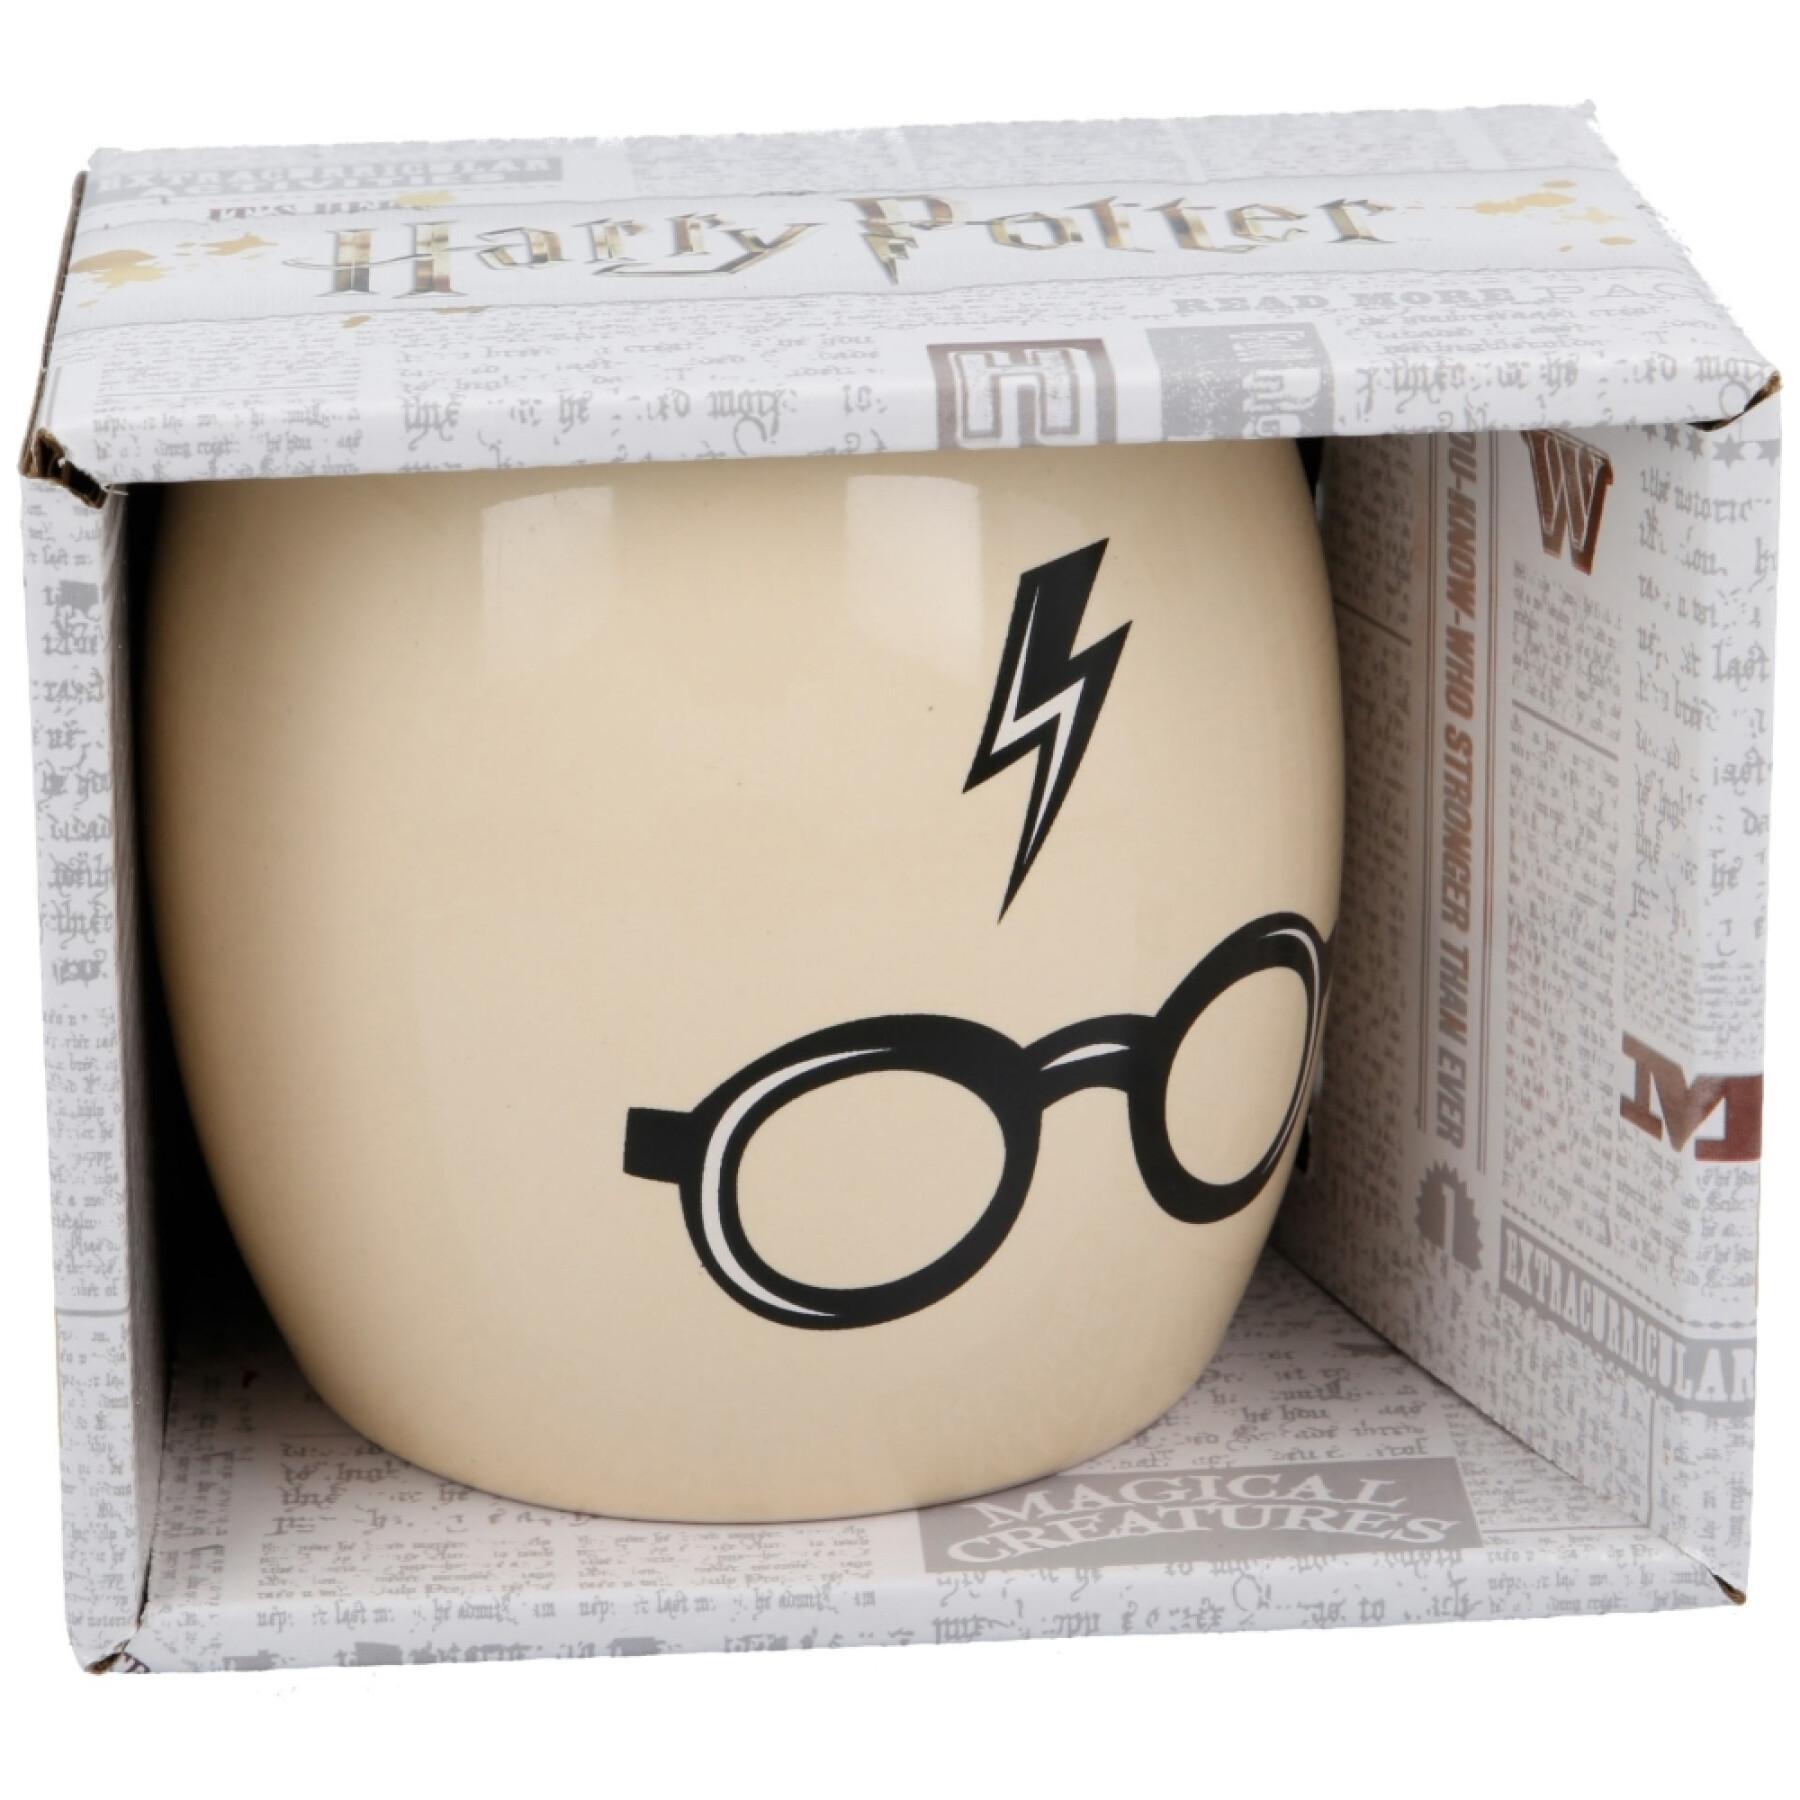 Mug céramique boîte cadeau Stor Harry Potter